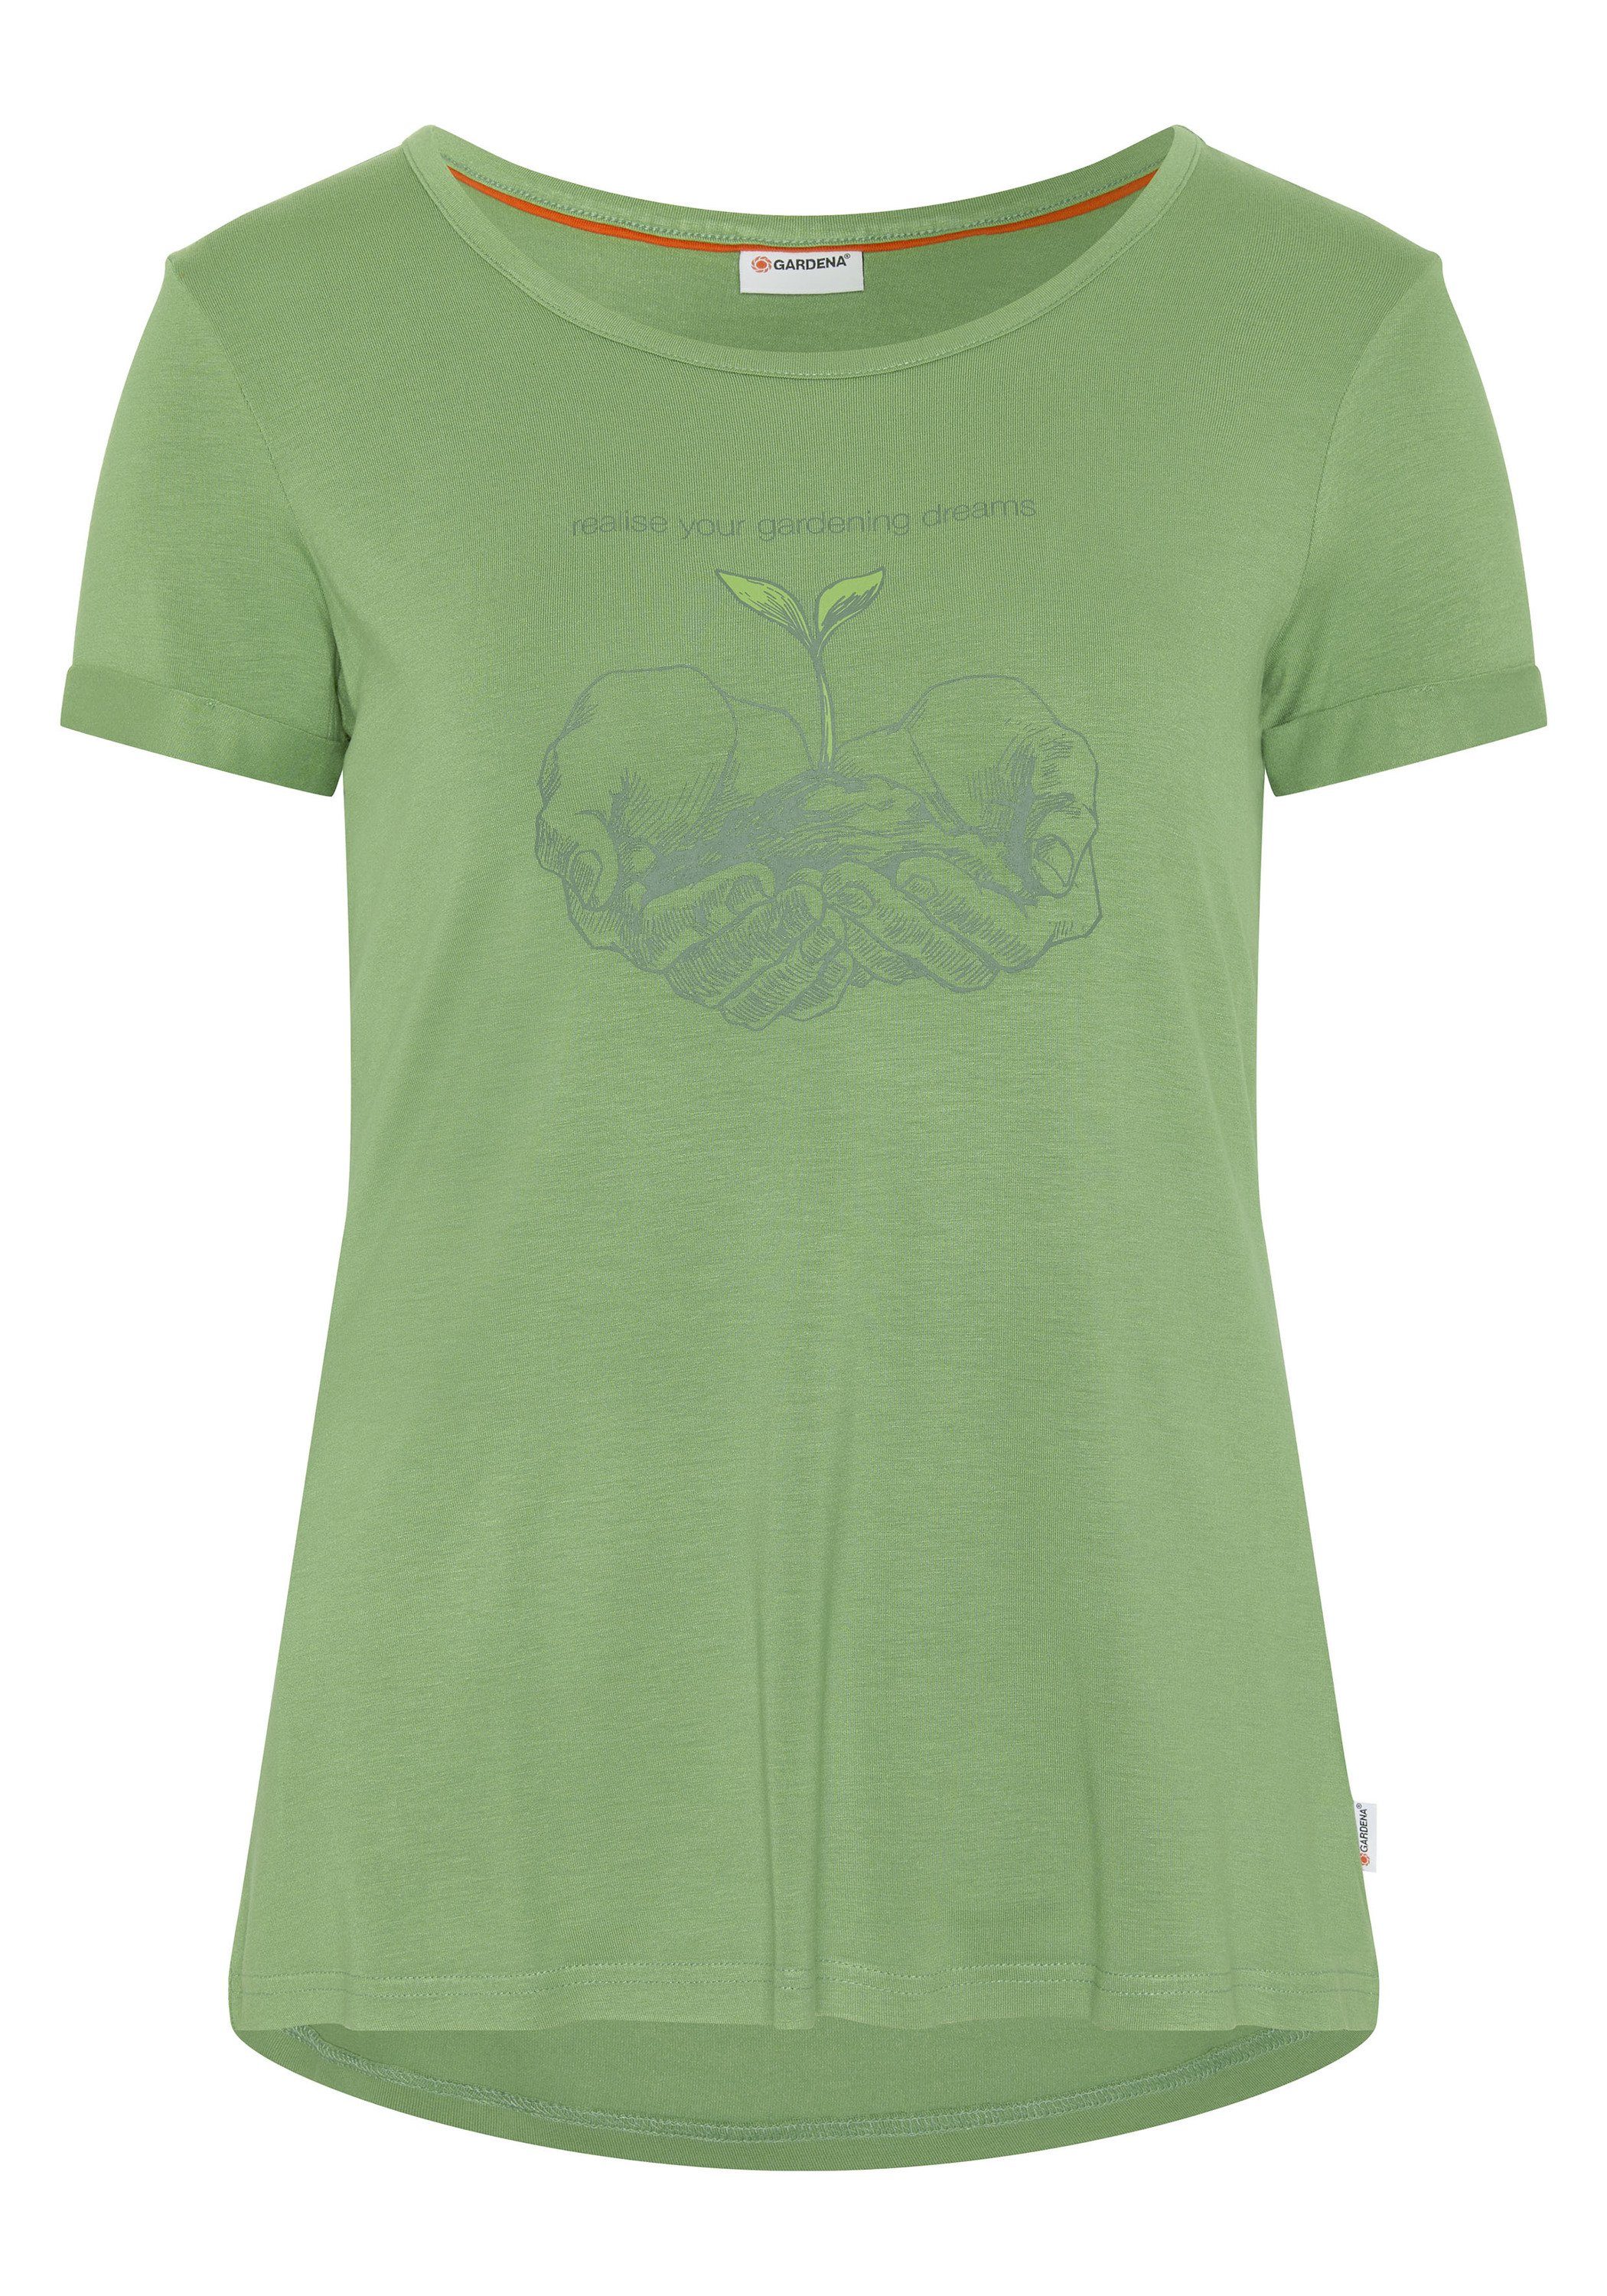 GARDENA T-Shirt A-Shape, GARDENA Schriftzug Motiv Damen-Shirt und mit